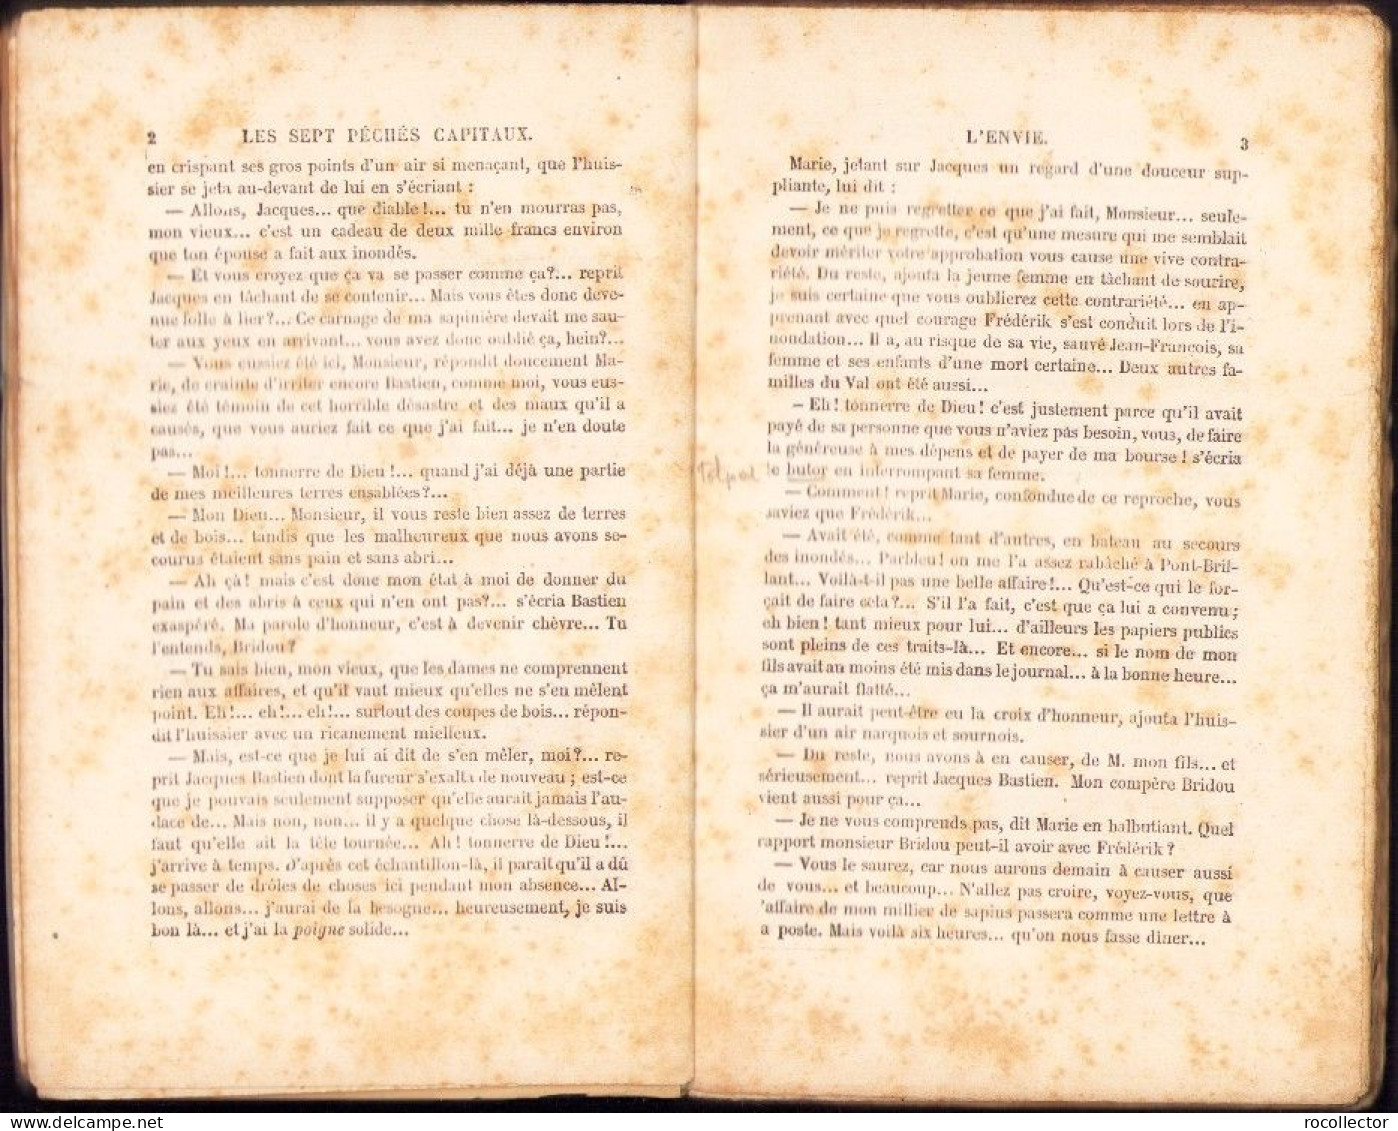 Les Sept Péchés Capitaux L’envie La Colére Par Eugen Sue 1885 Tome I + II C4118N - Livres Anciens